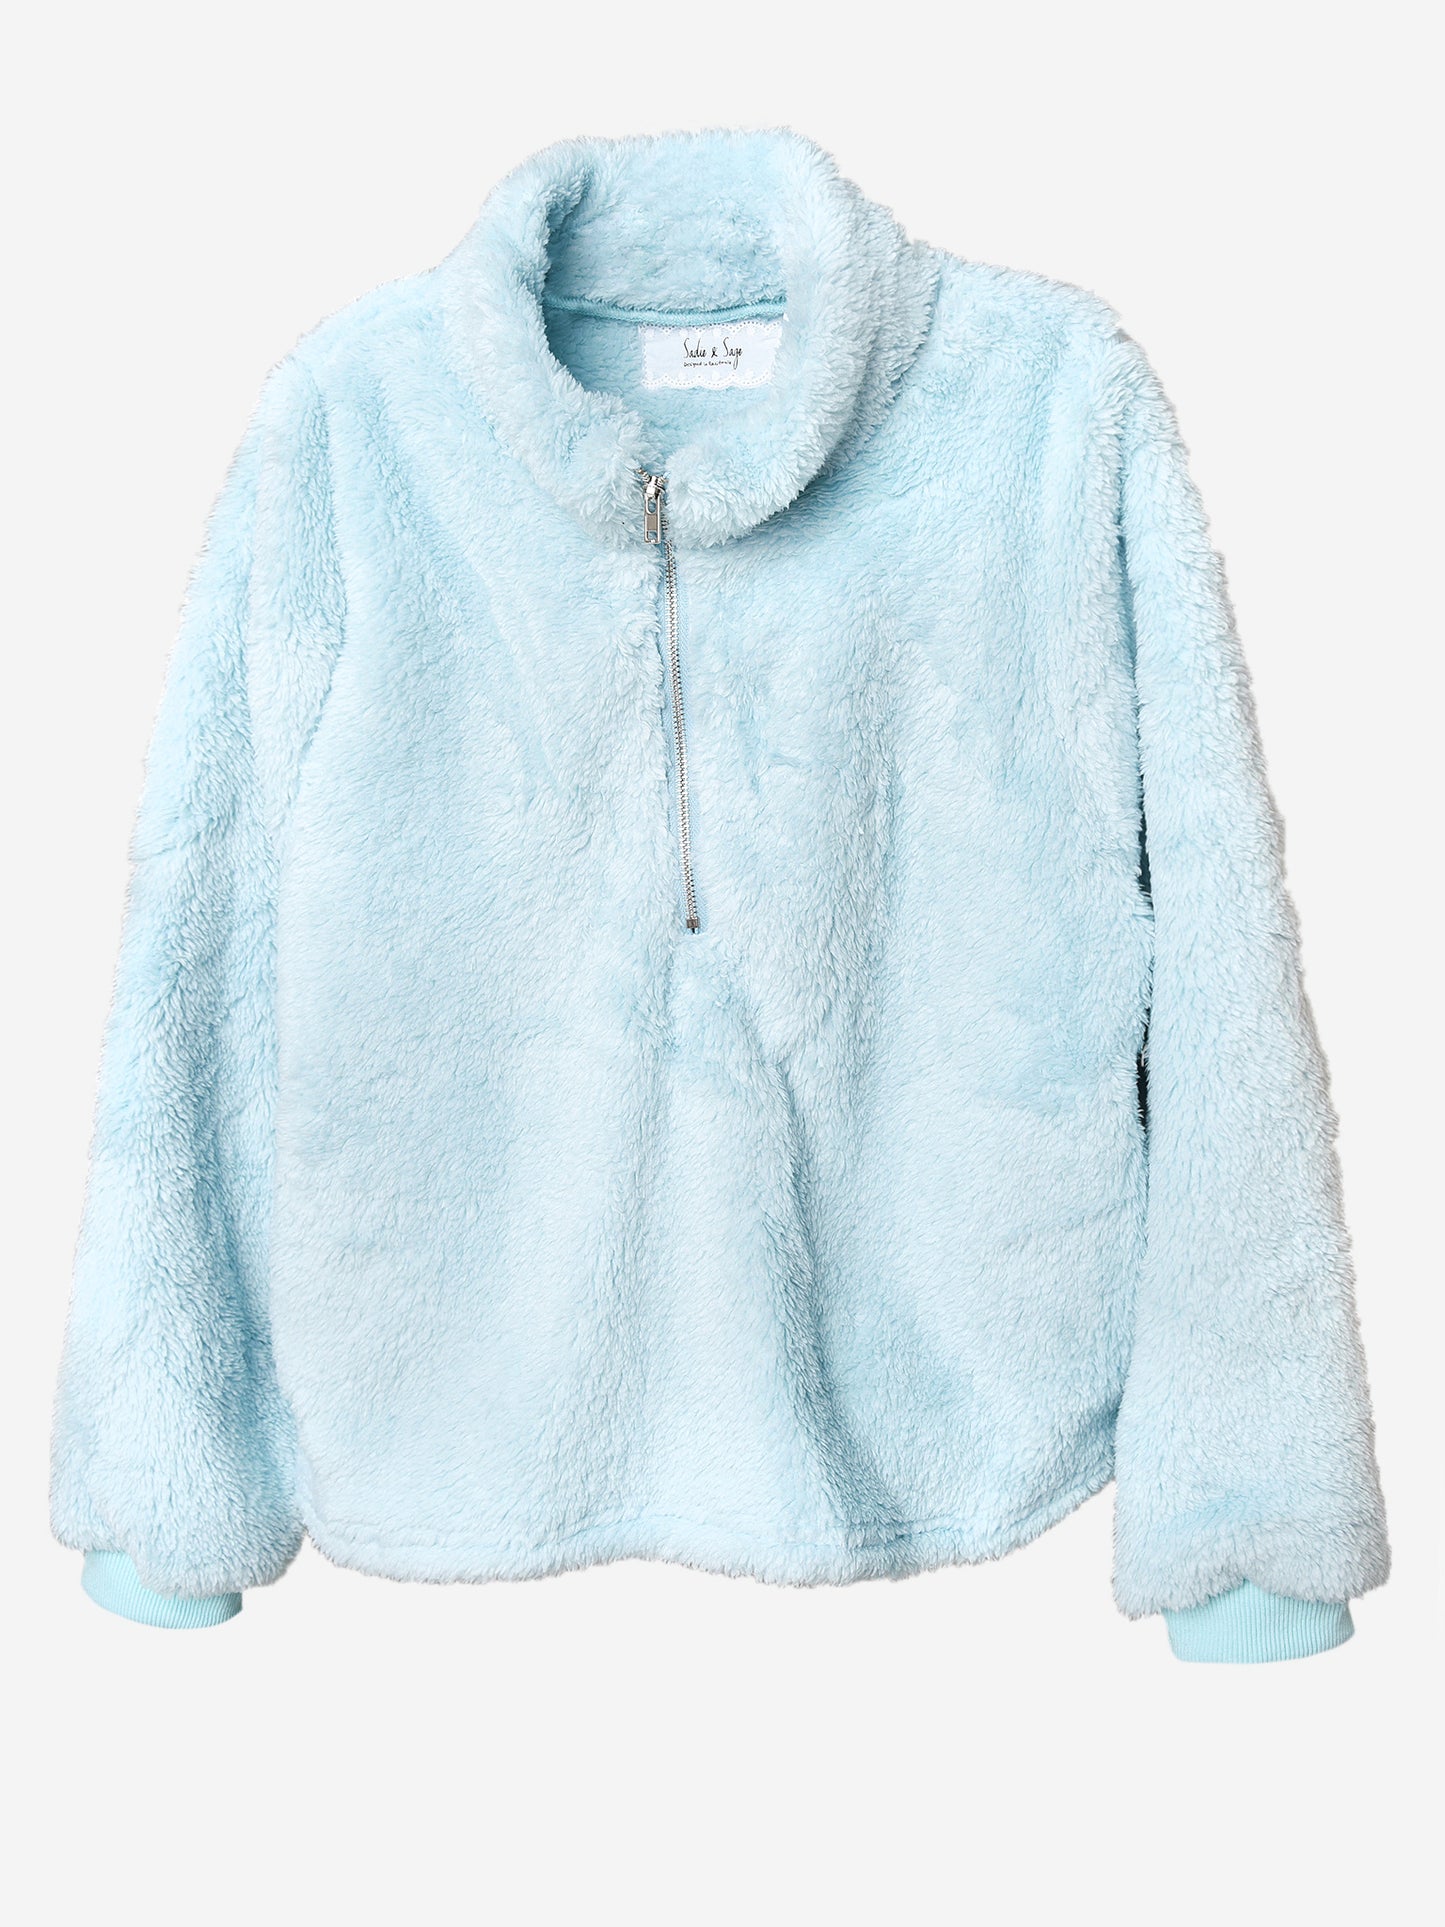 Sadie & Sage Girls' Fur Pullover Sweater